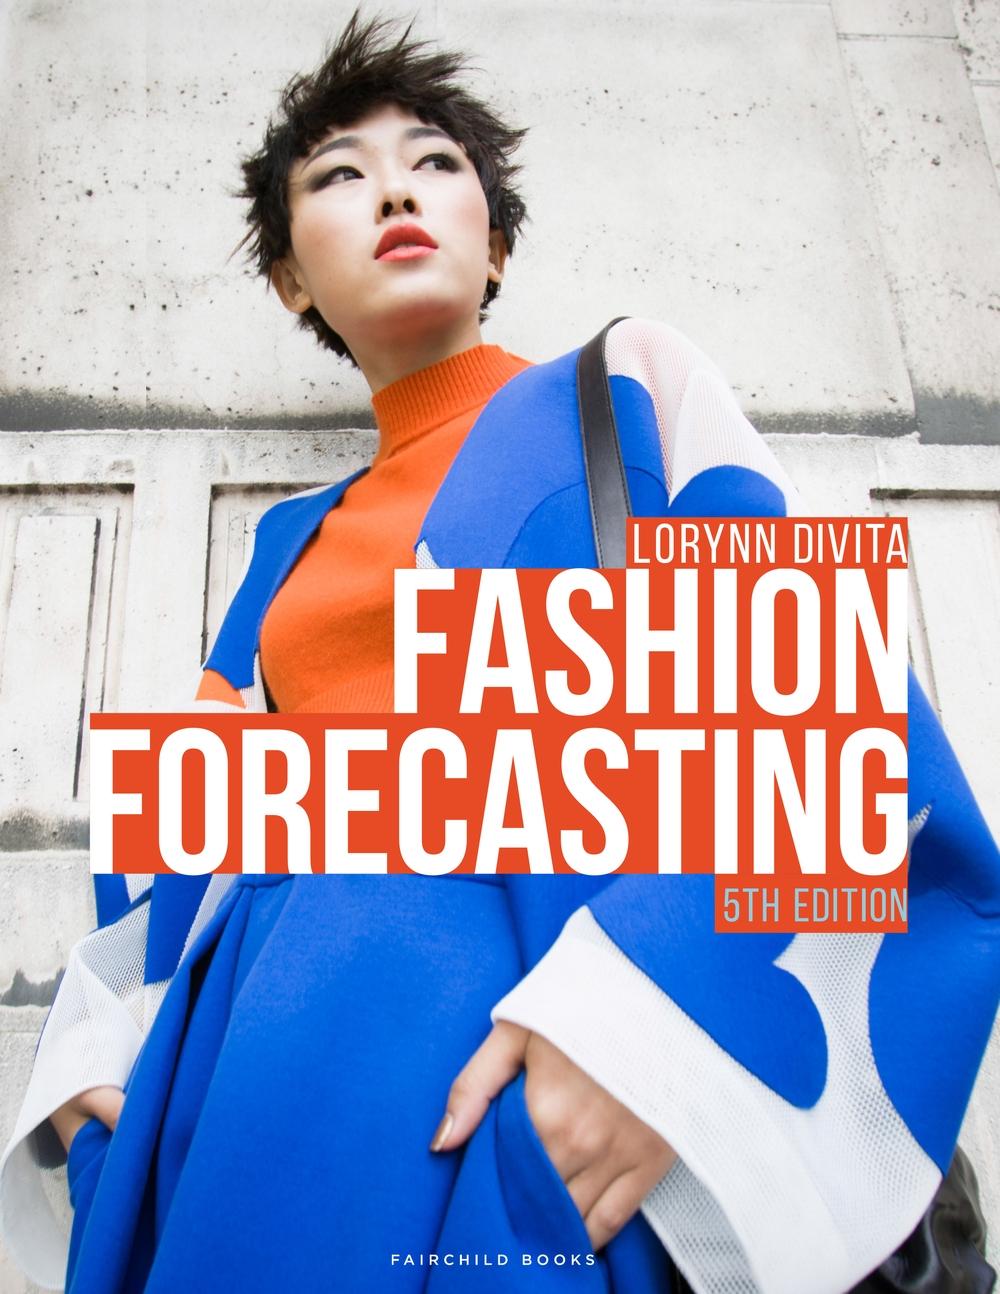 Fashion Forecasting - Lorynn Divita